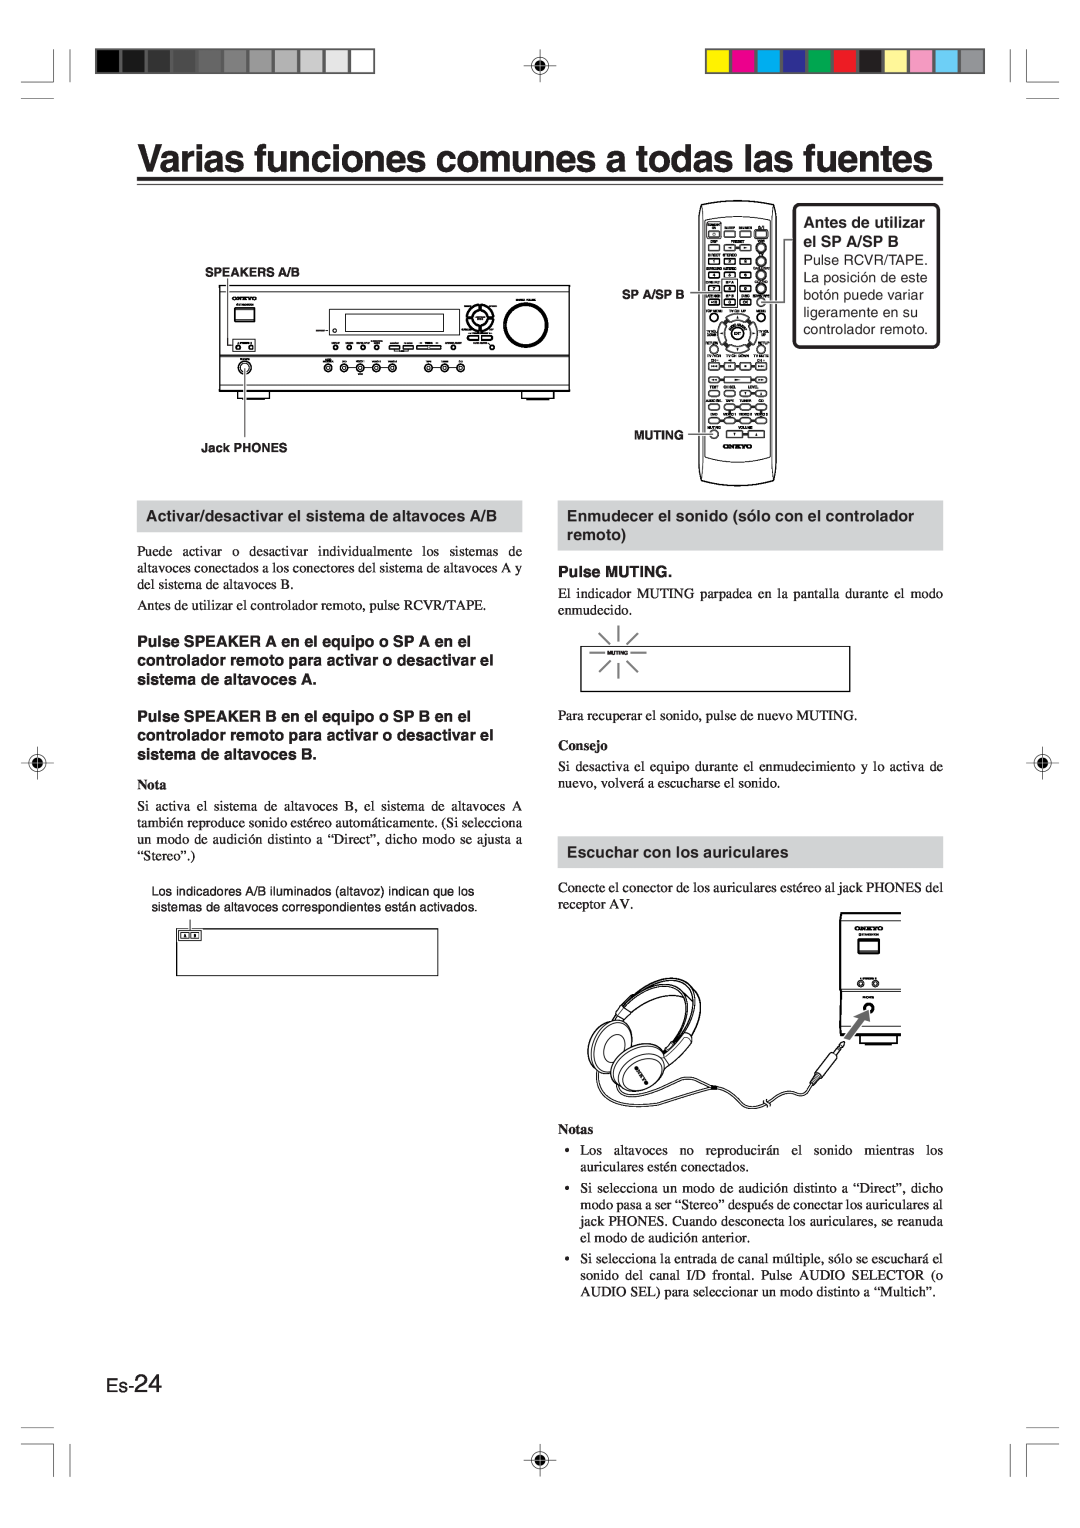 Onkyo HT-R420 manual Varias funciones comunes a todas las fuentes, Es-24, Consejo, Notas 